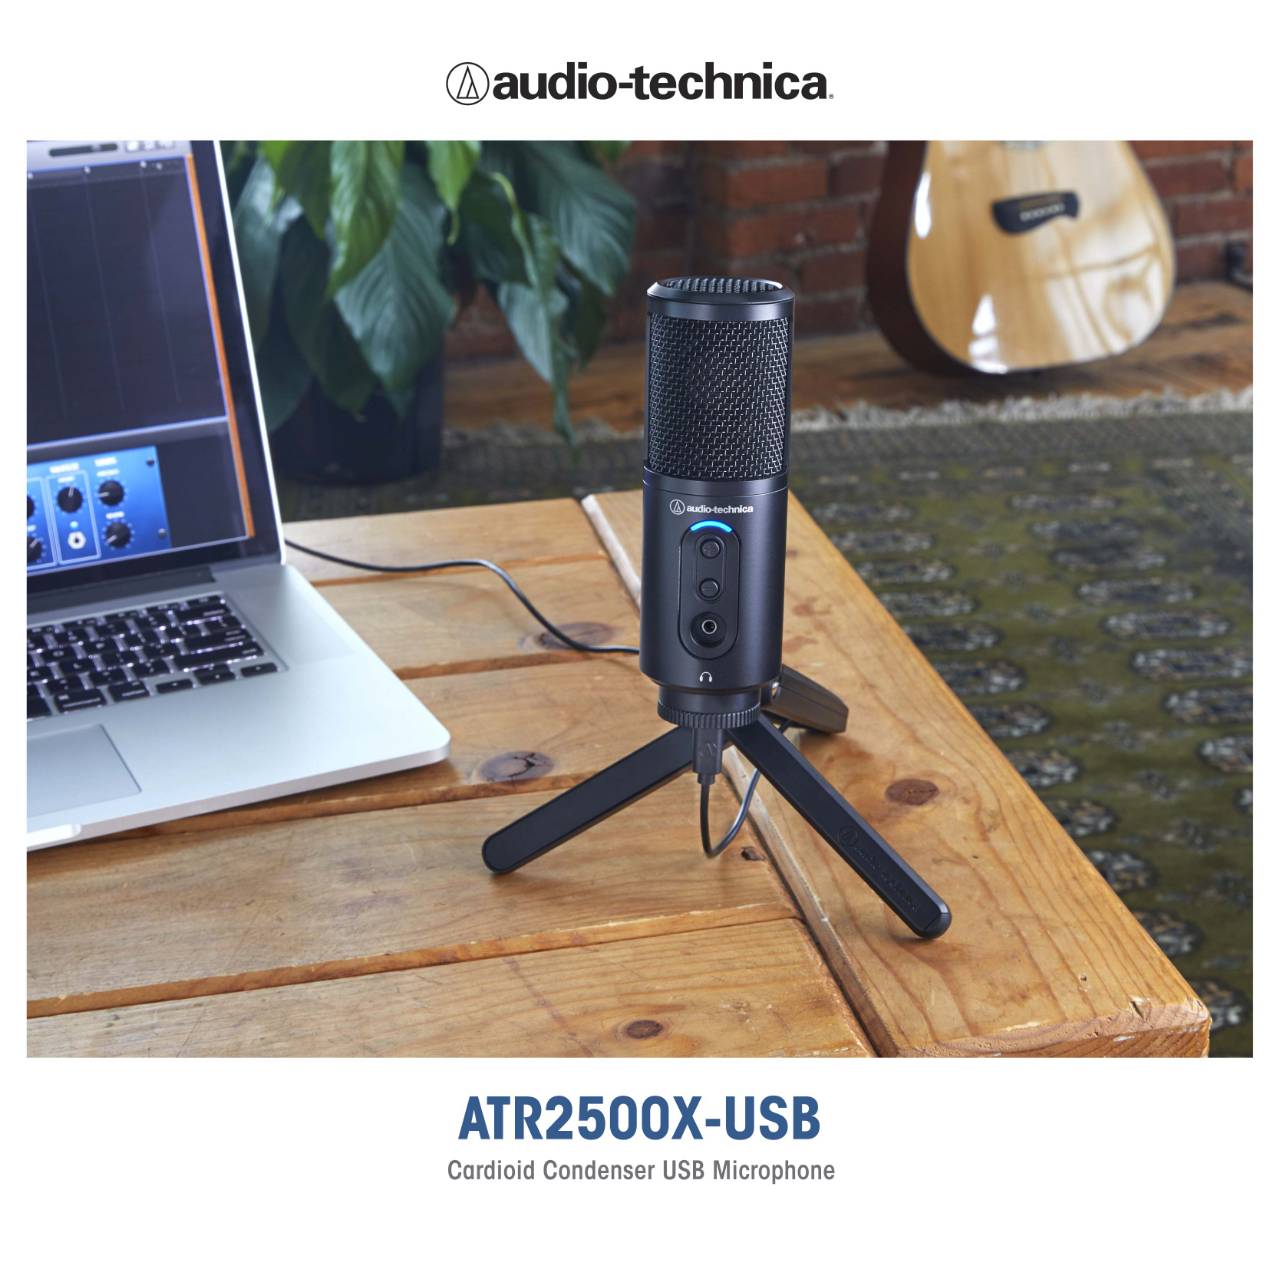 อาร์ทีบี เปิดตัว ไมโครโฟน 2 รุ่นใหม่ ภายใต้แบรนด์ ออดิโอ-เทคนิก้า ATR2500X-USB และ ATR2100X-USB ตอบโจทย์การใช้งานระดับมืออาชีพ